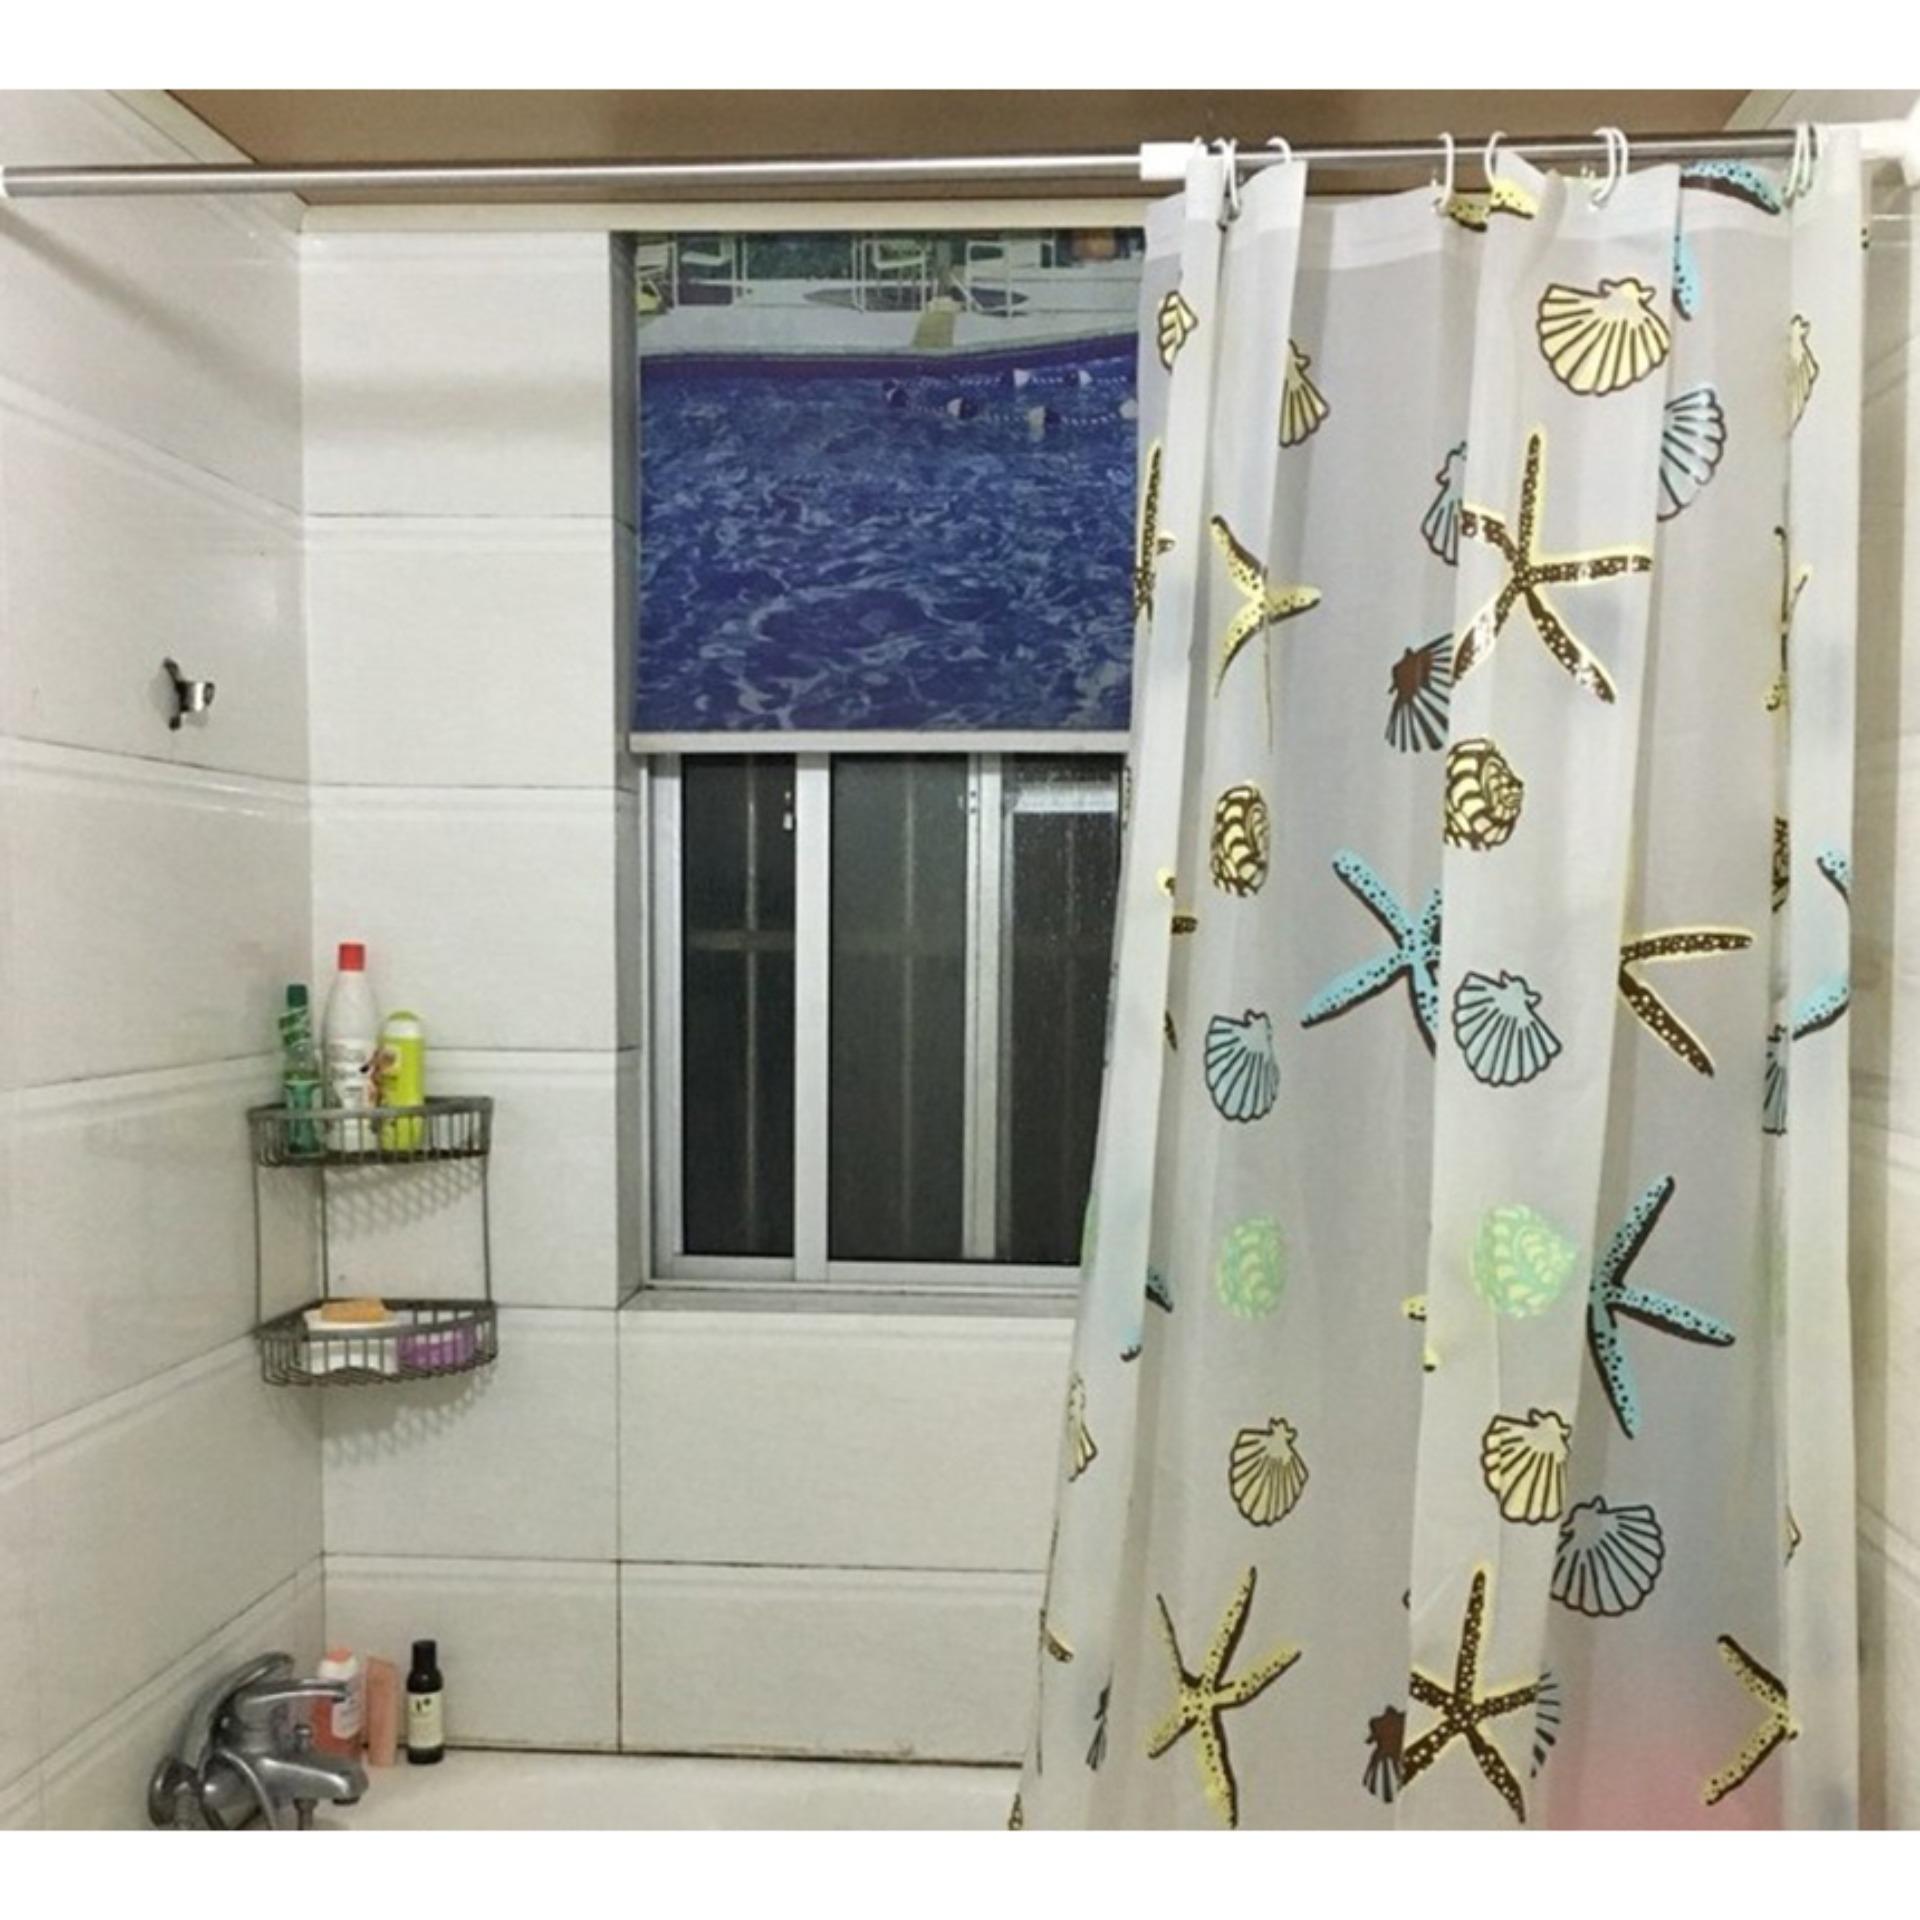 Rèm nhà tắm tại hà nội , Rèm phòng tắm hà nội - Rèm cửa giá rẻ, Chất liệu bền đẹp, không phai màu, không thấm nước, chống nắng, mưa, bụi bặm S143 - BH Uy Tín 1 đổi 1 bởi Smart Tech